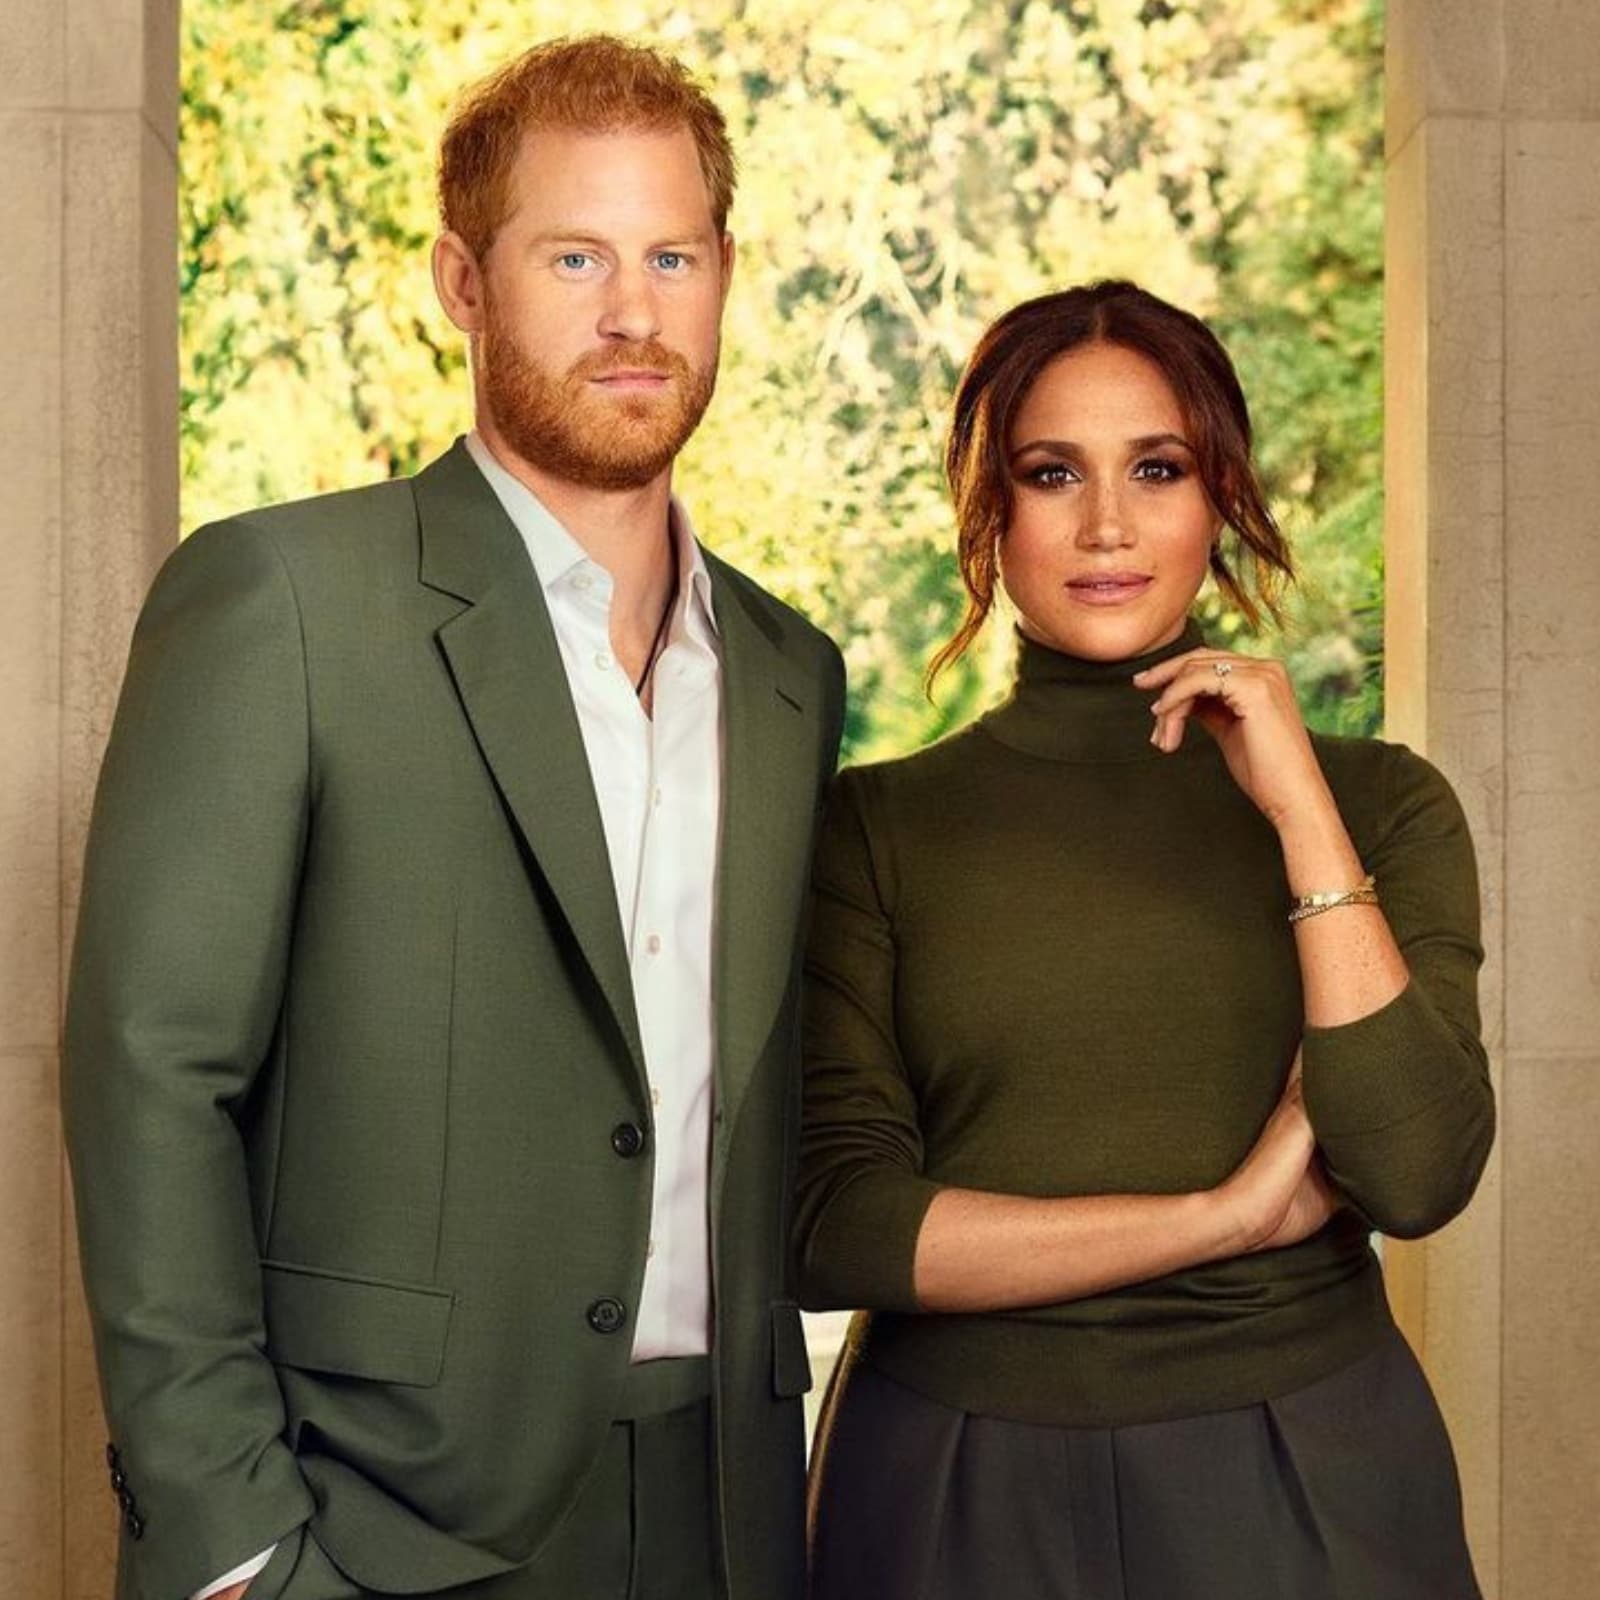 Príncipe Harry e Meghan Markle chegam ao Reino Unido com Archie e Lilibet antes das celebrações do Jubileu da Rainha.  (Imagem: Instagram)